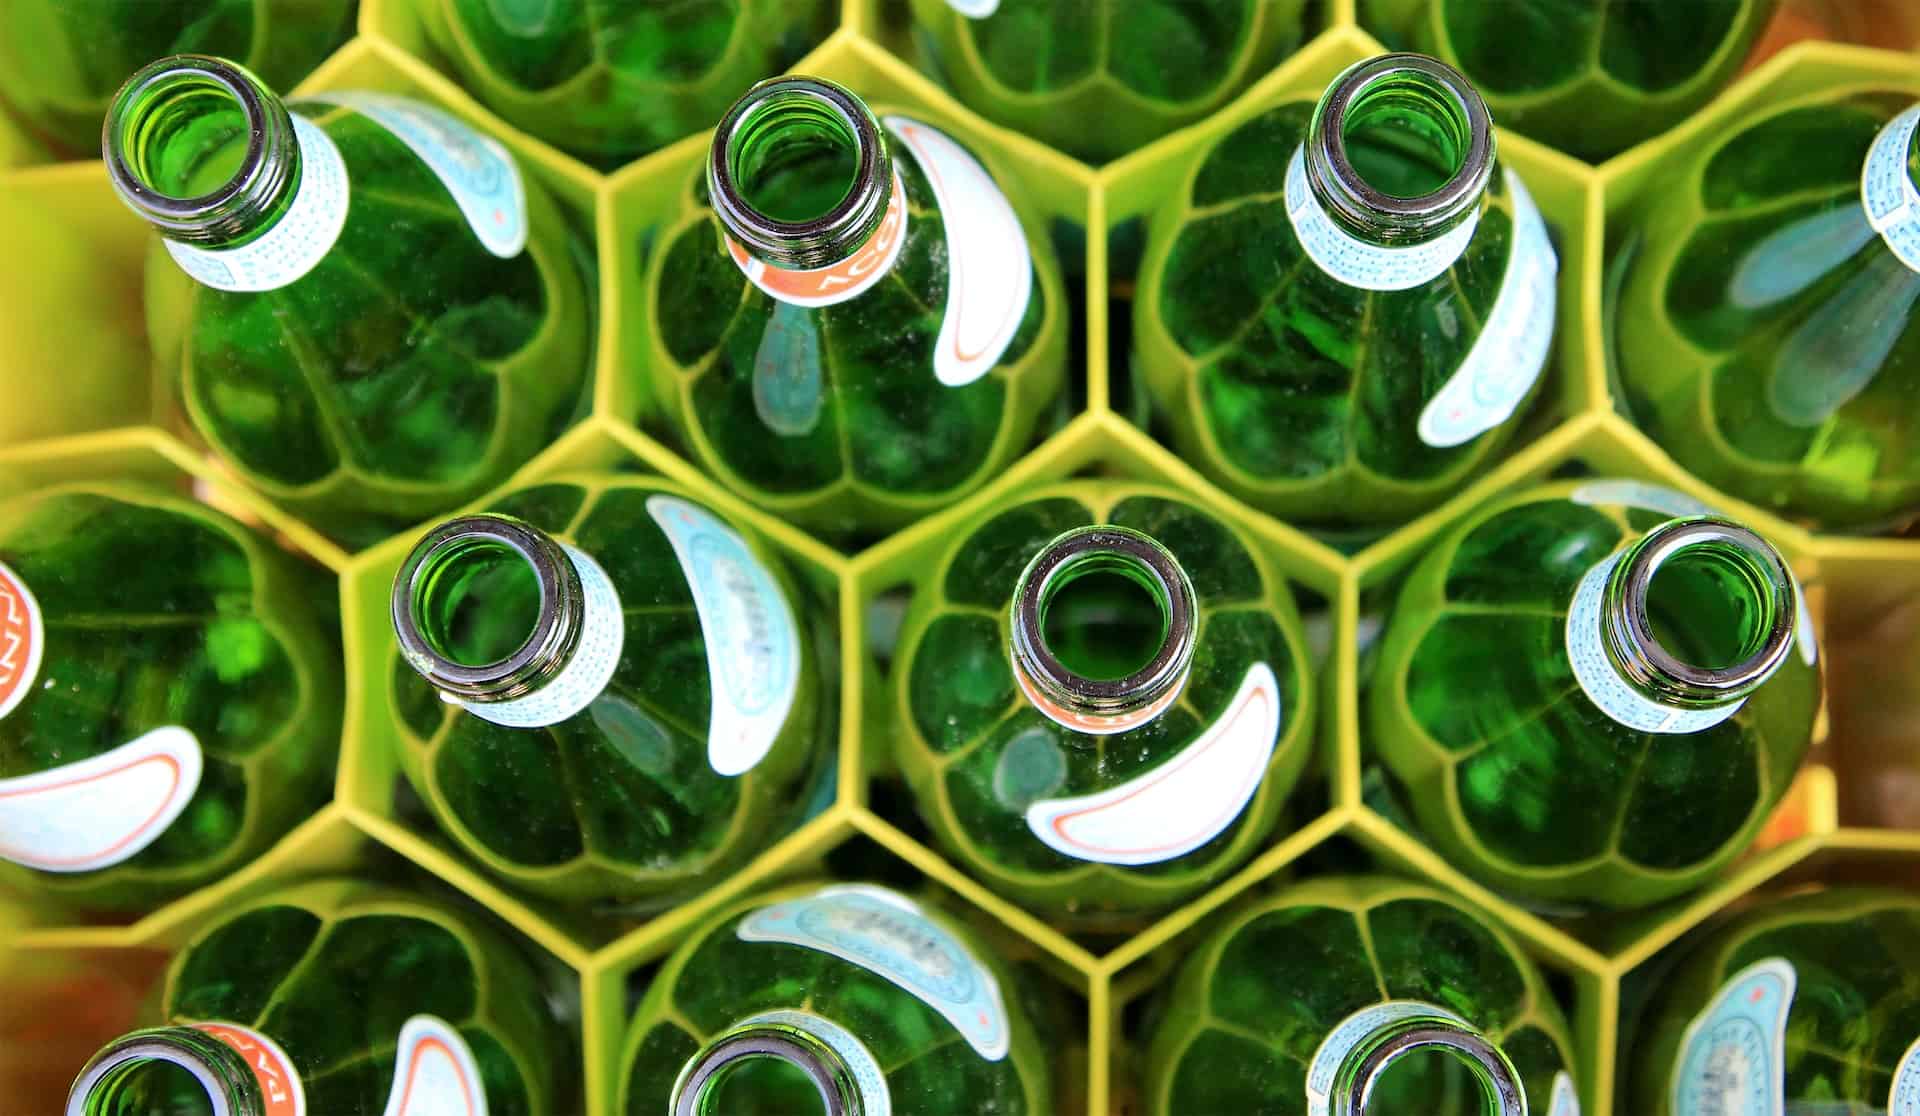 Szklana butelka – 5 ciekawych zastosowań w domu